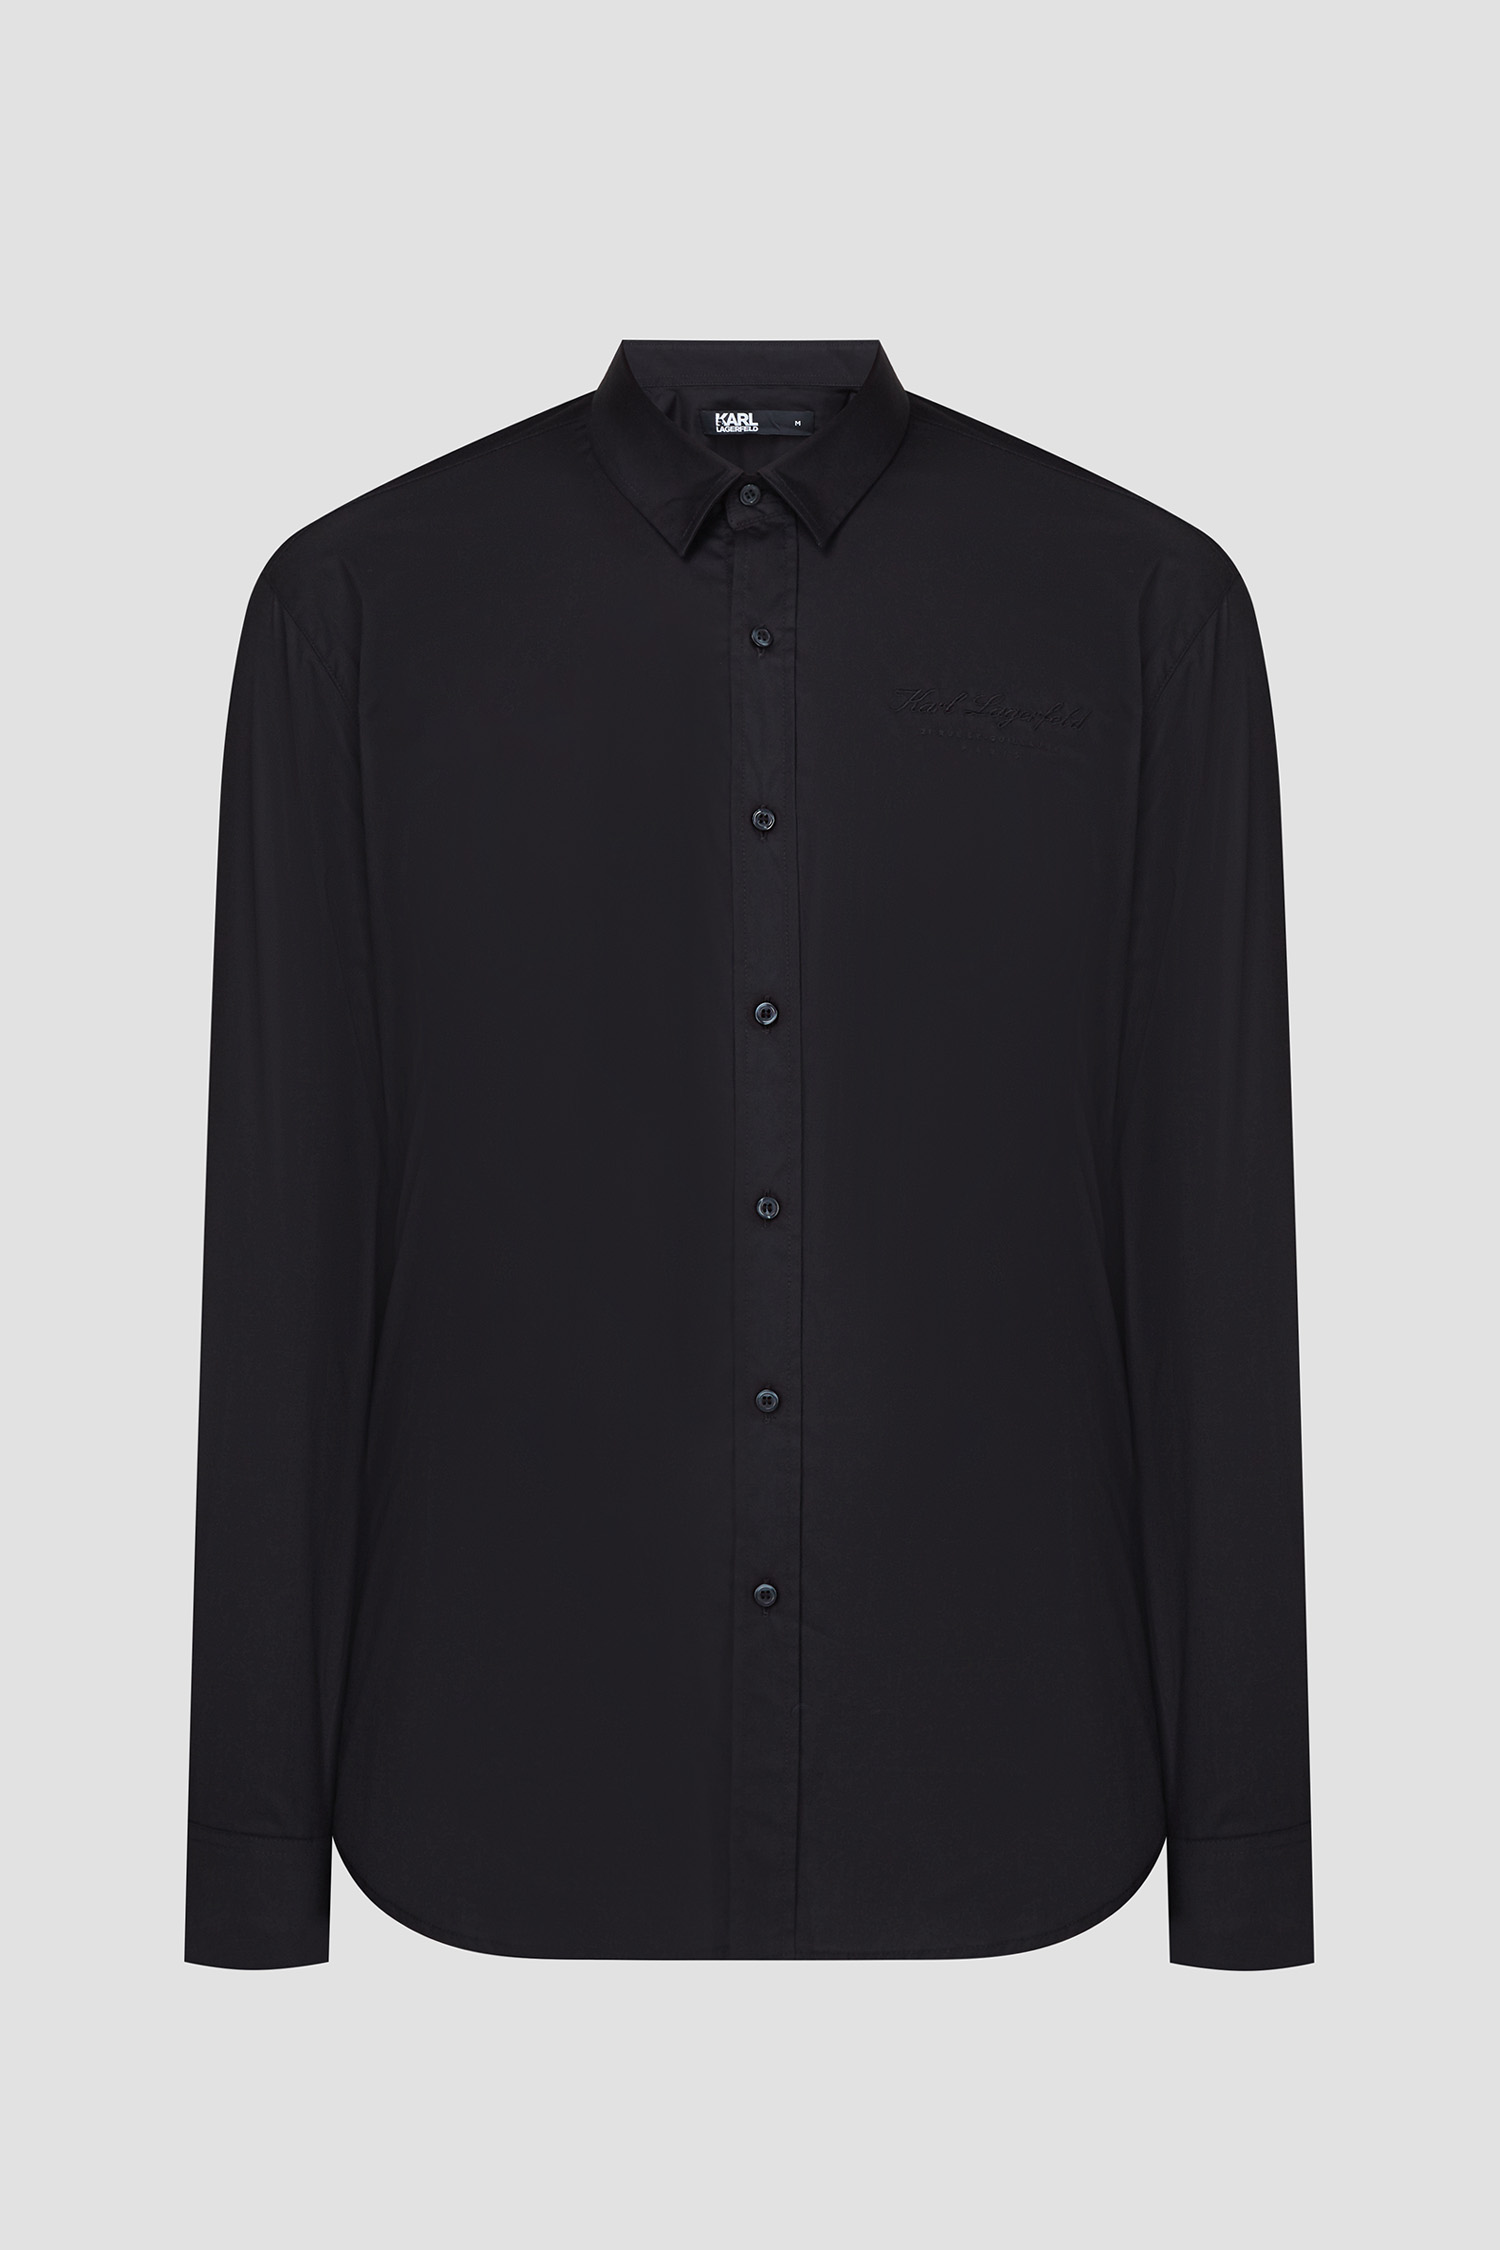 Мужская черная рубашка Karl Lagerfeld 534600.605940;990